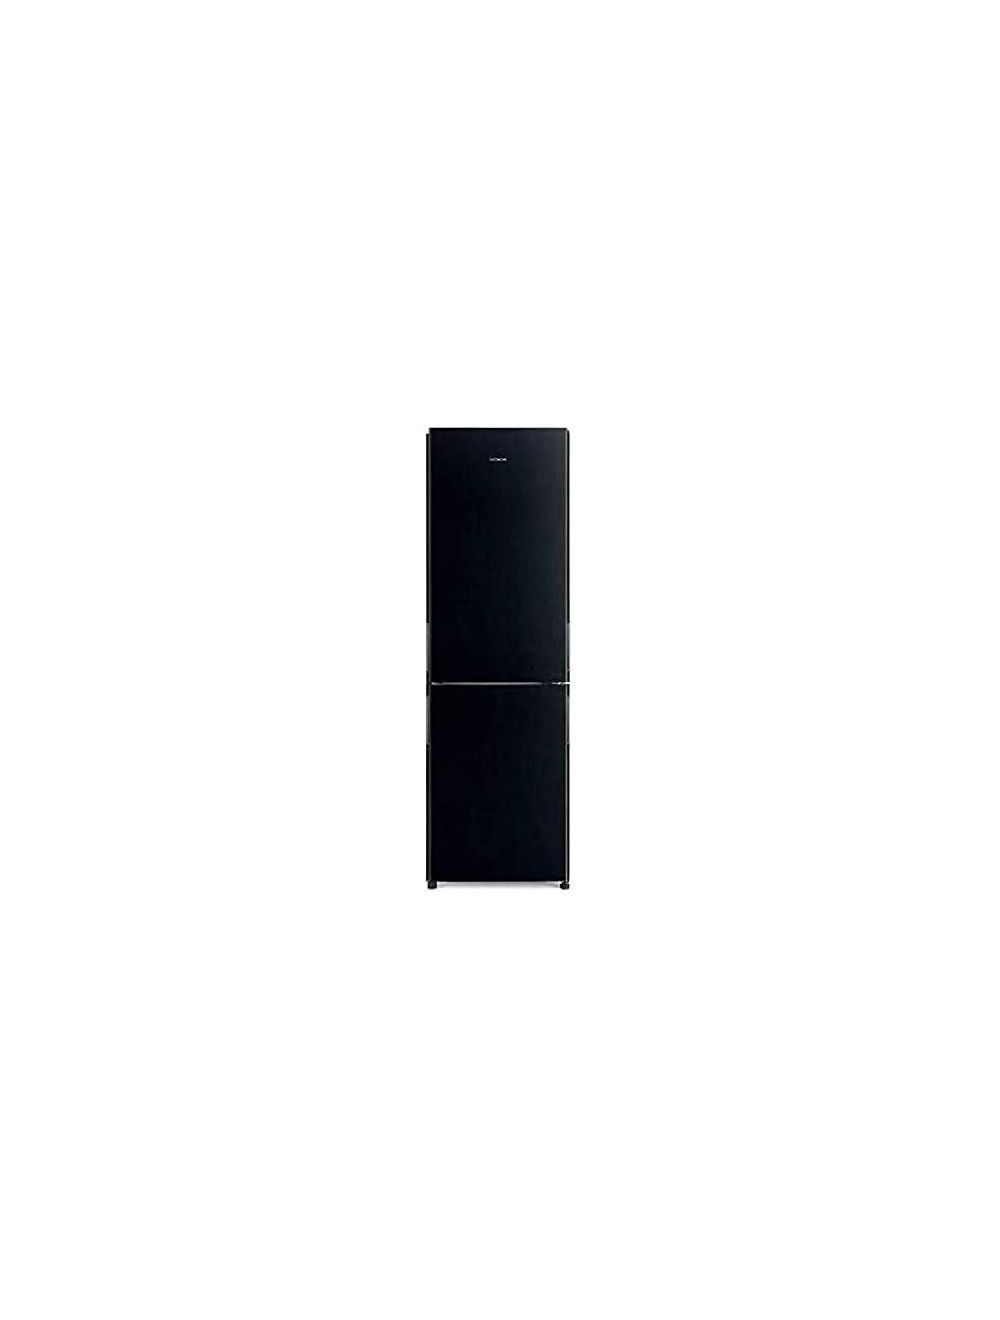 Hitachi 410 Litres French Bottom Freezer Refrigerator-RBG410PUK6GBK